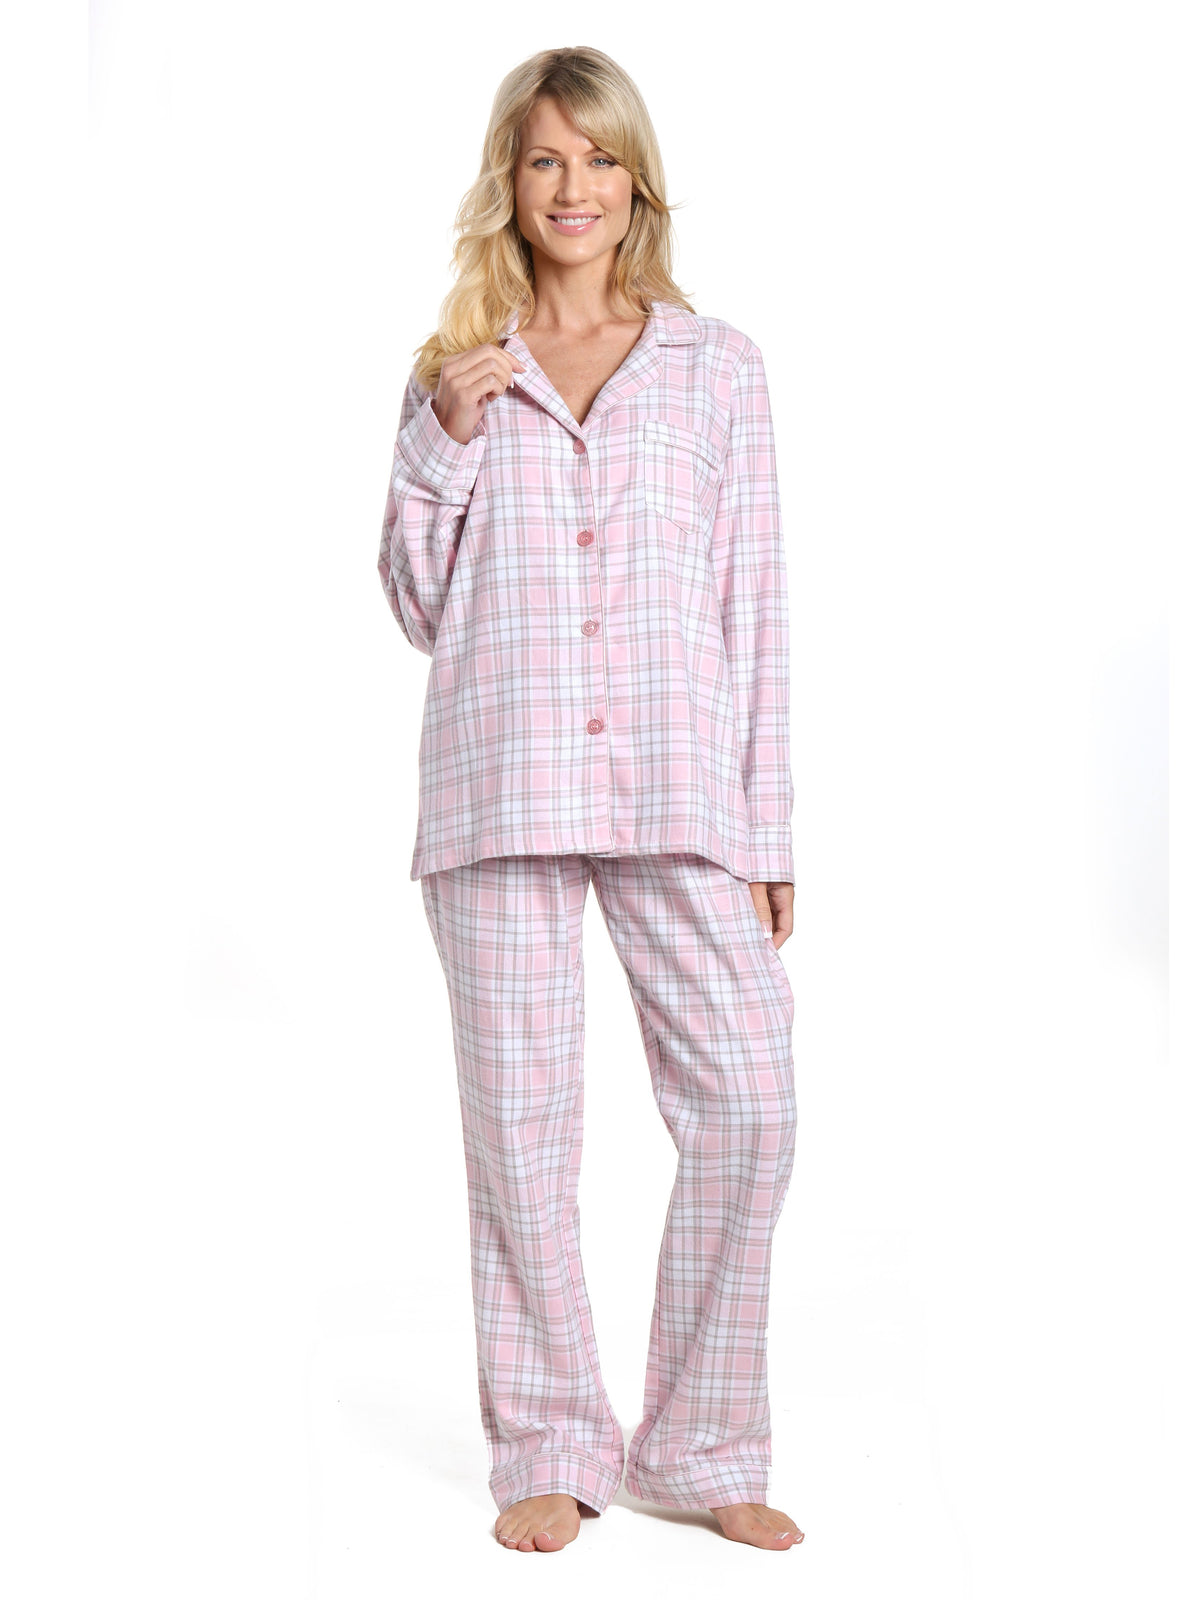 Womens 100% Cotton Lightweight Flannel Pajama Sleepwear Set - Plaid White-Pink